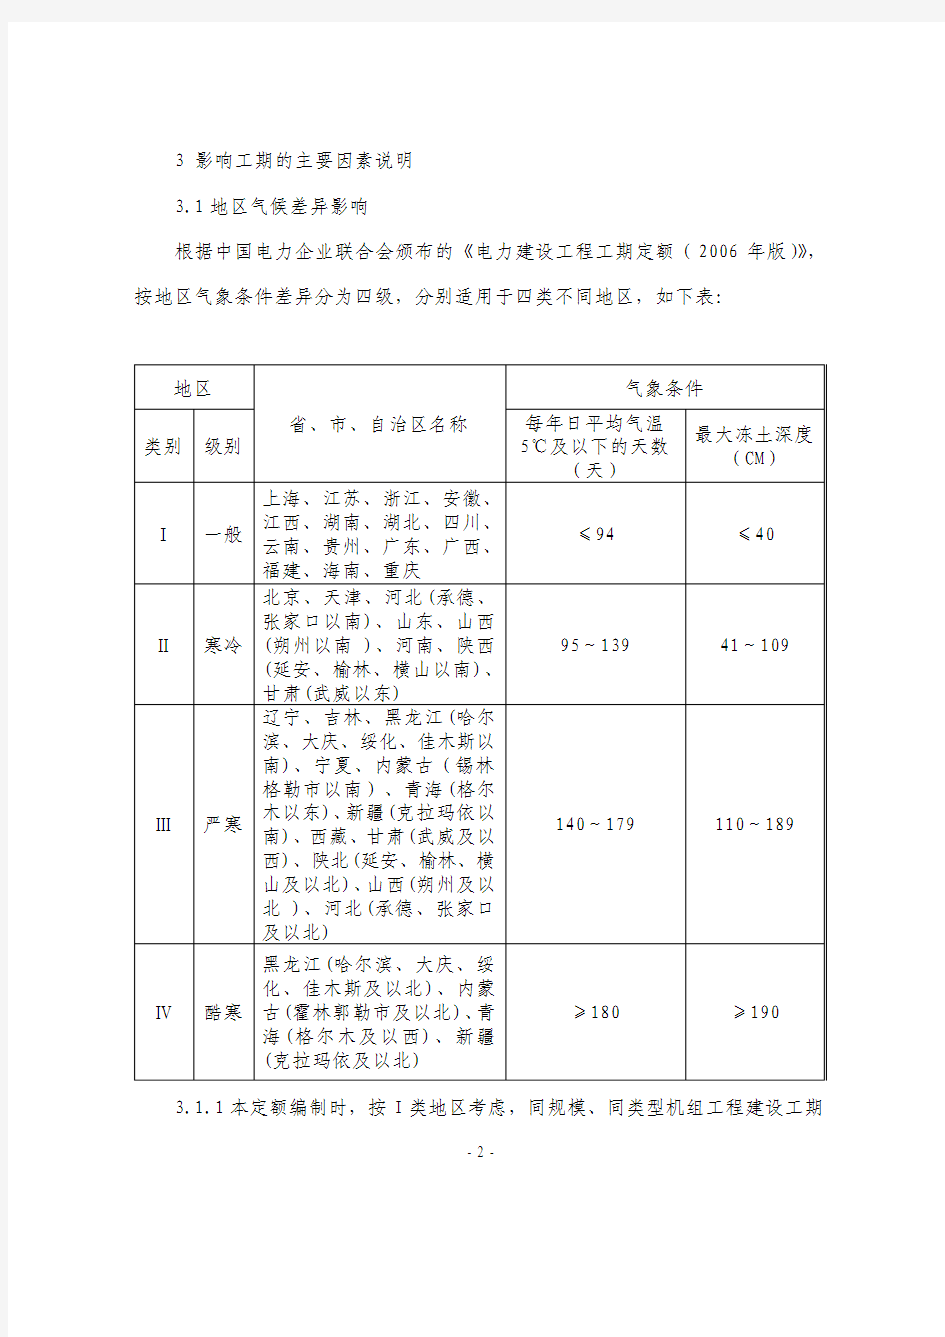 中国华电集团公司燃煤电厂工程建设工期定额(C版)编制说明